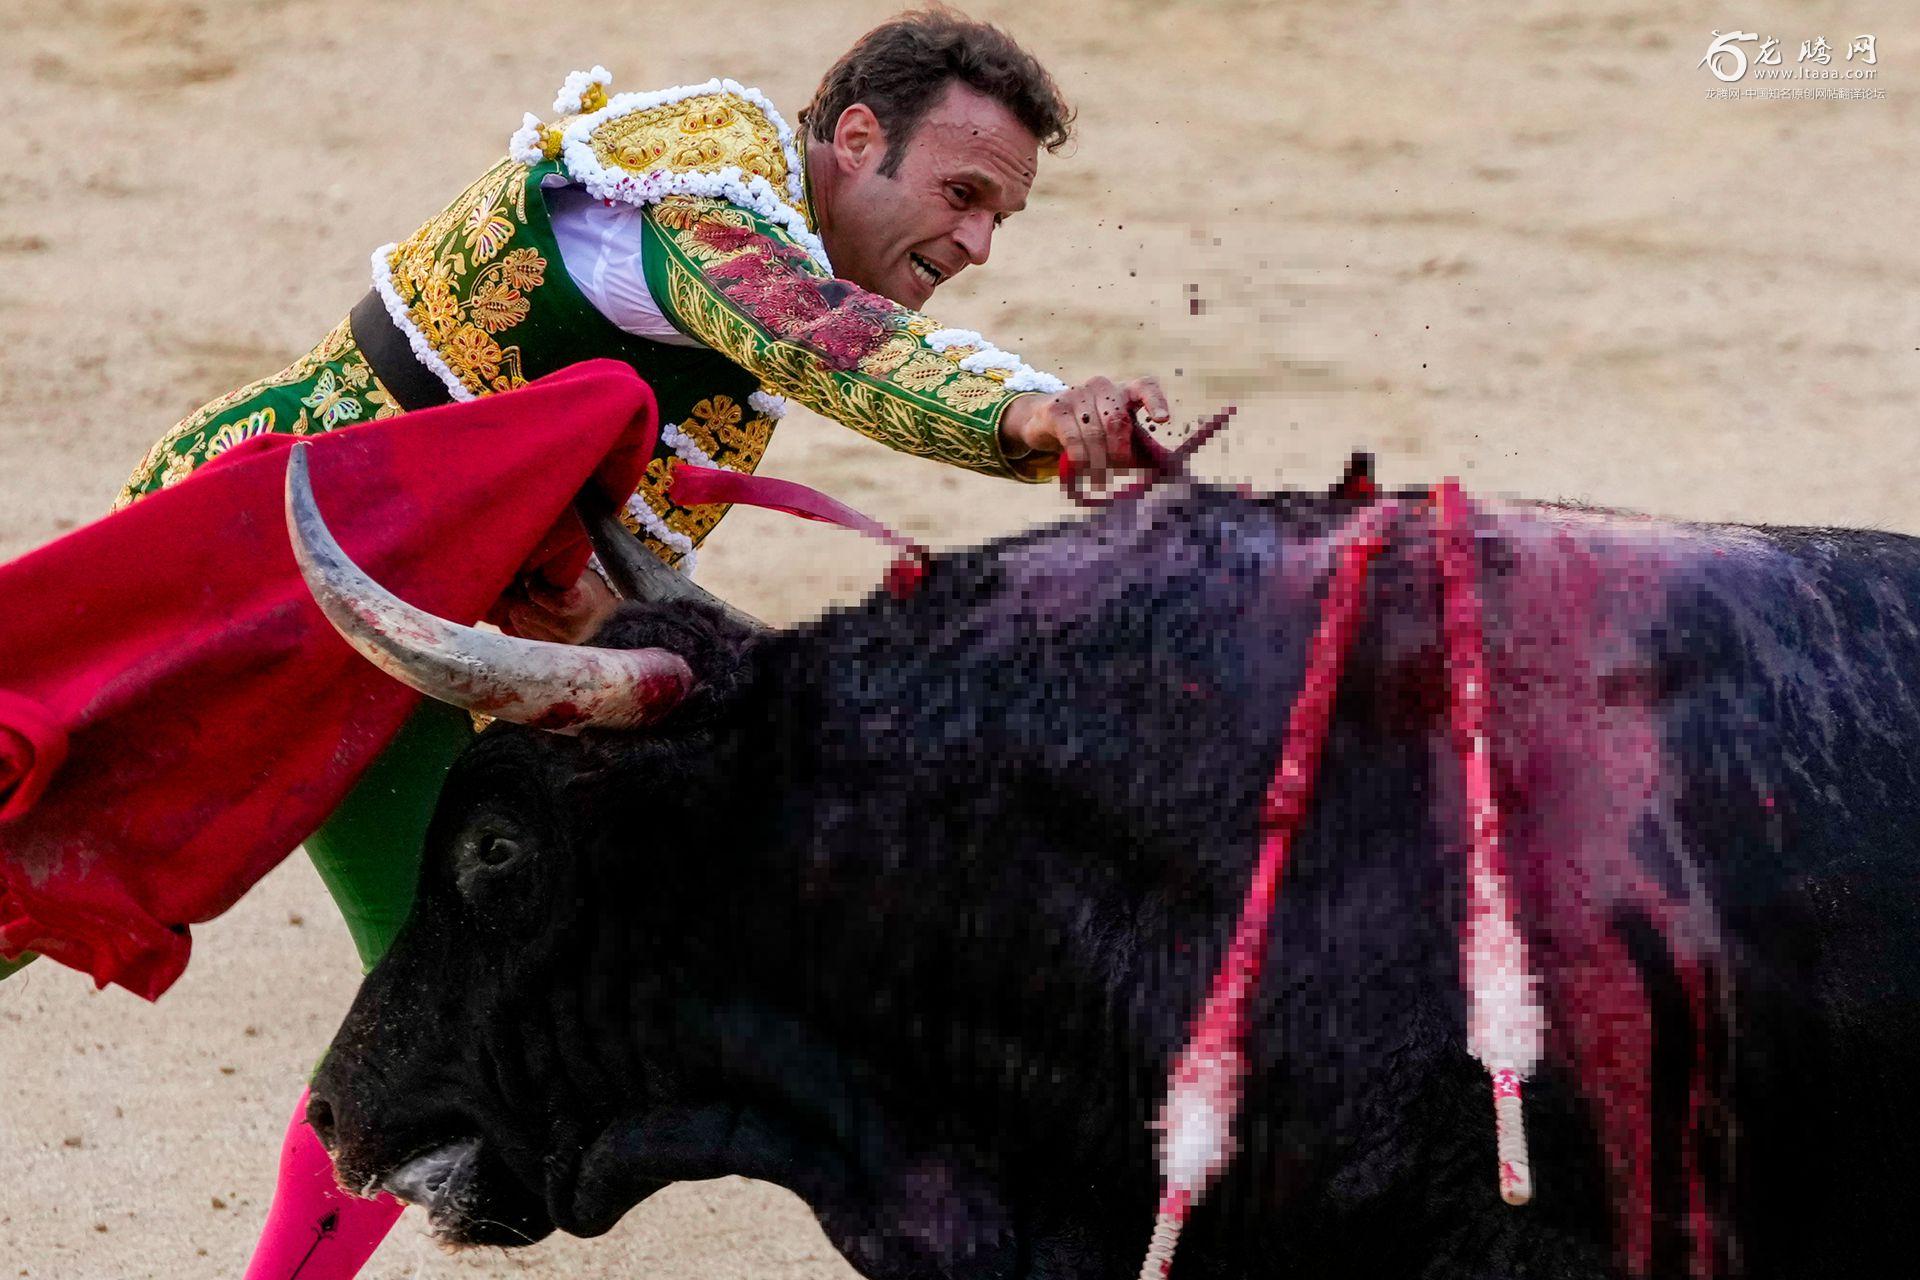 血腥的西班牙斗牛表演公牛被长剑刺死画面残忍 